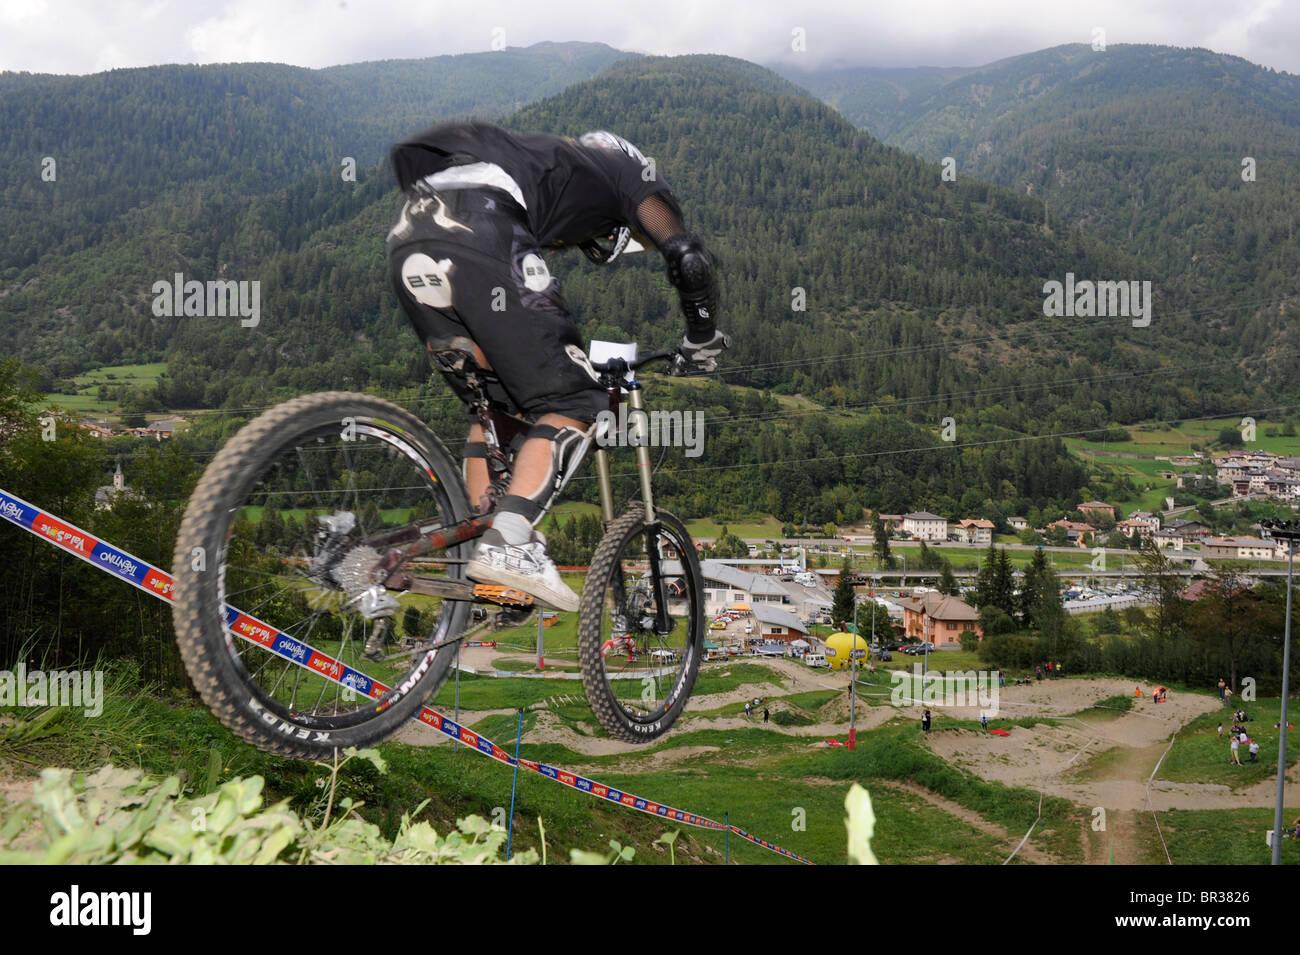 In den Bergen der Dolomiten in Italien. Mountainbike downhill Wettbewerb an der Ski-Liftstation Commezzadura. Stockfoto